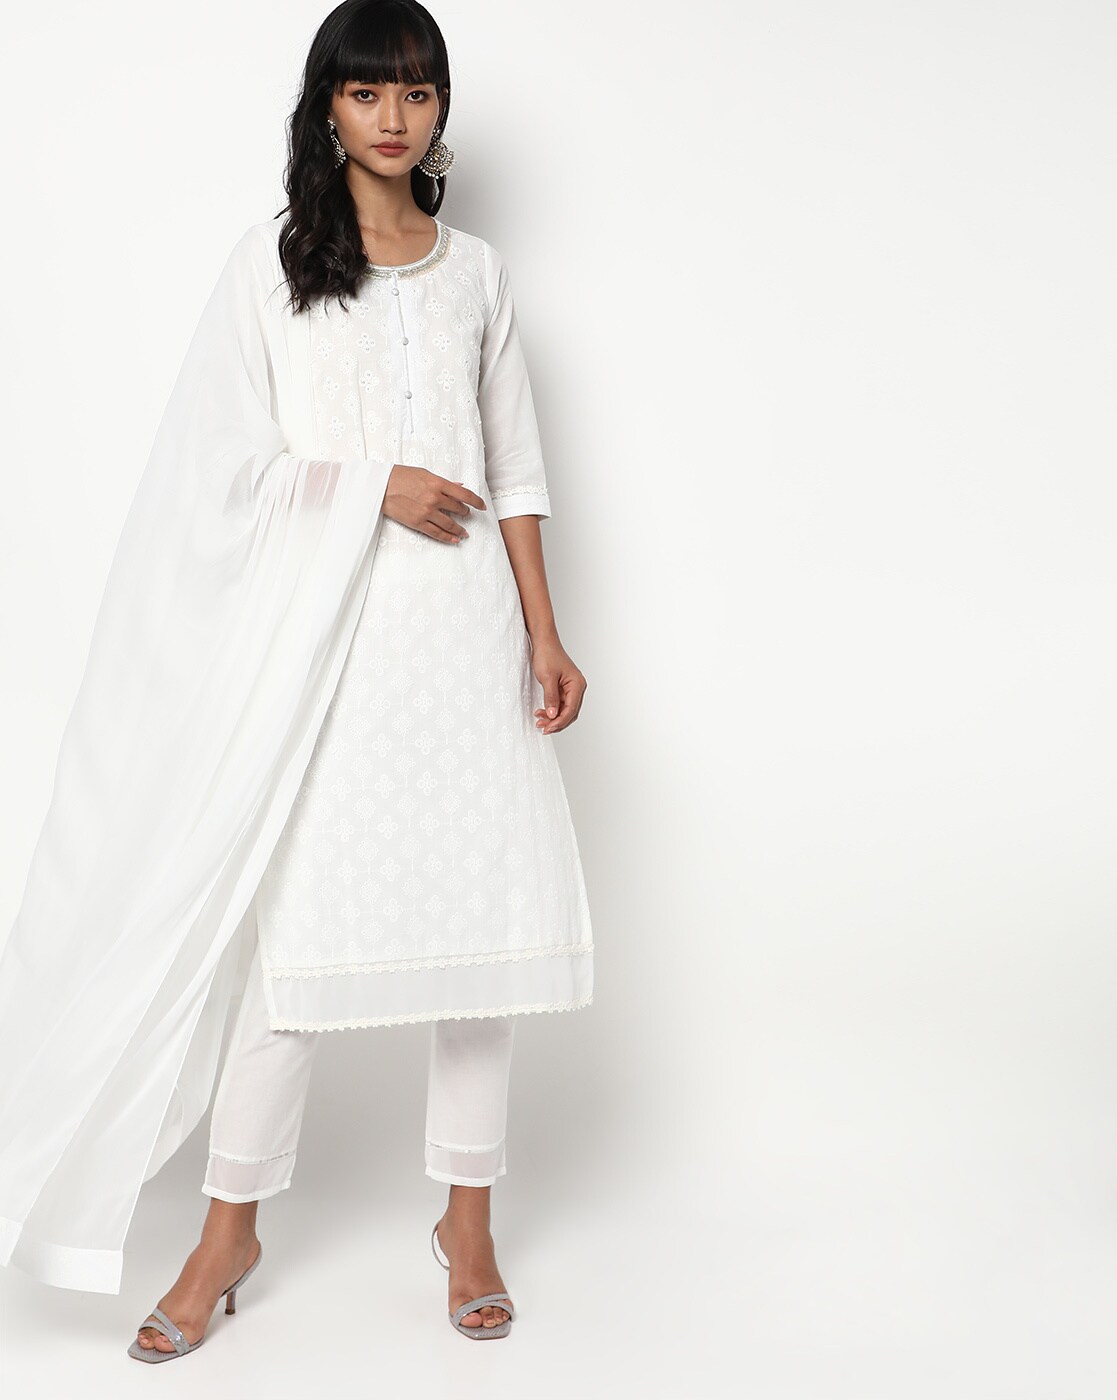 Buy Aurelia Women's Cotton Set (23AUAS14239-606002A_Off-White at Amazon.in